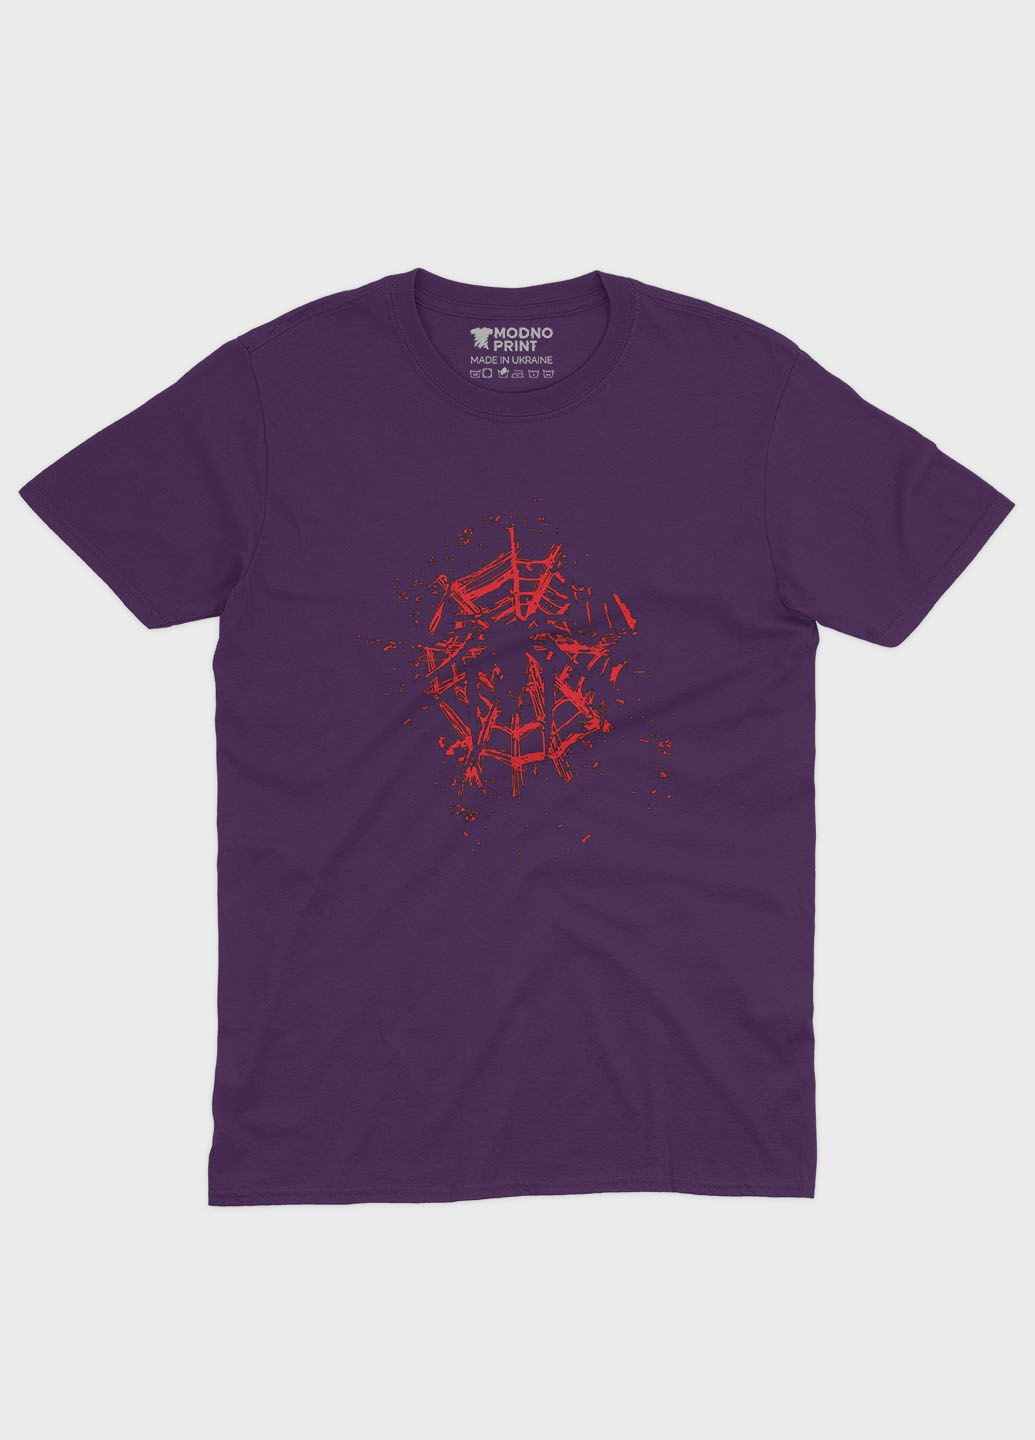 Фиолетовая демисезонная футболка для мальчика с принтом супергероя - человек-паук (ts001-1-dby-006-014-003-b) Modno